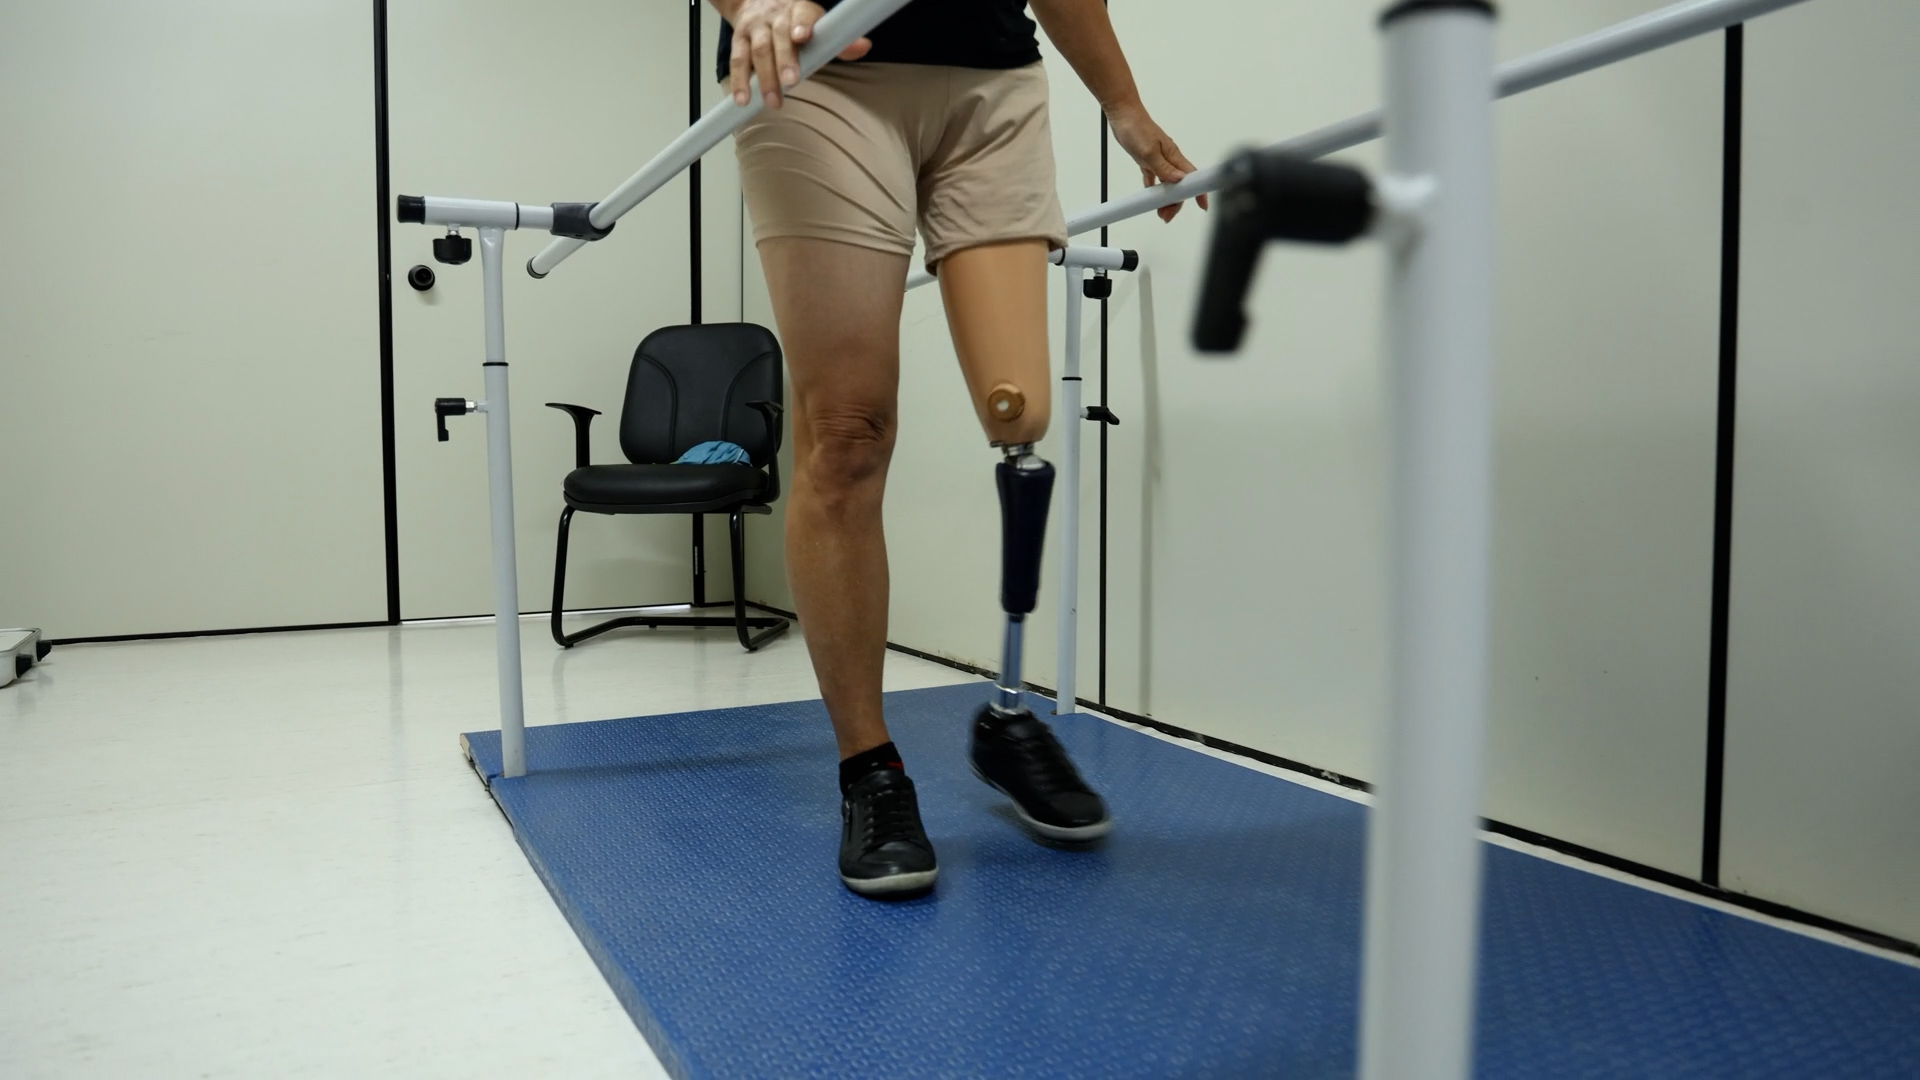 Centro Catarinense de Reabilitação do Governo oferece próteses e tratamento aos pacientes